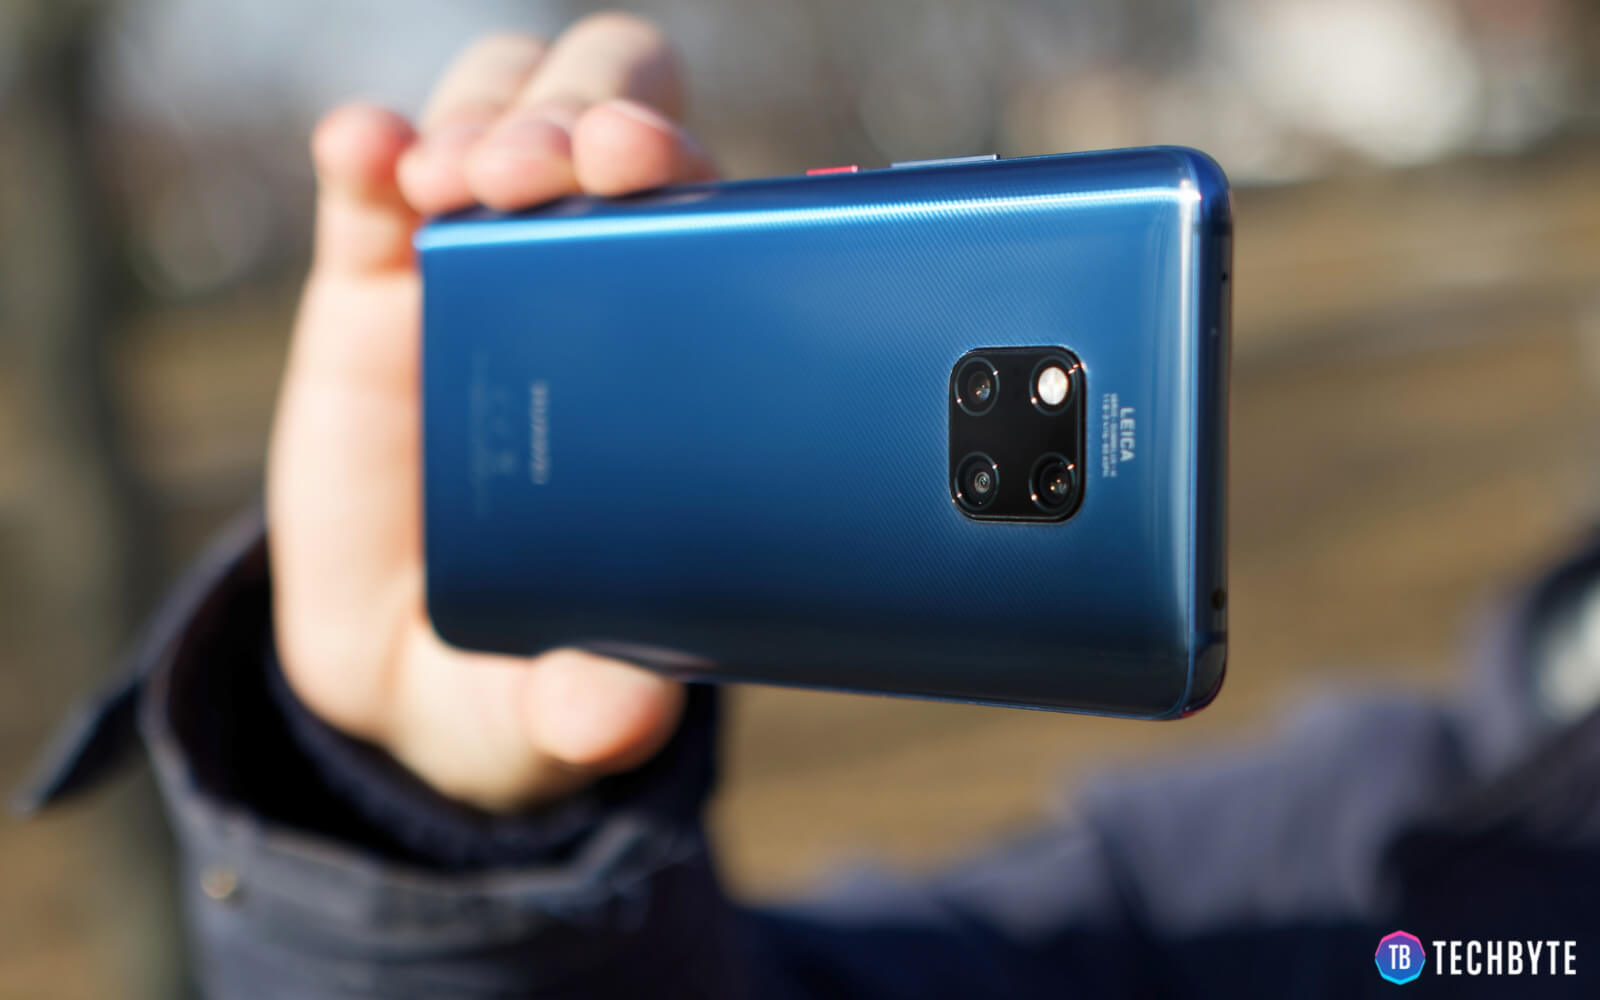 La serie Huawei Mate 10 ya no recibirá actualizaciones de seguridad cada mes